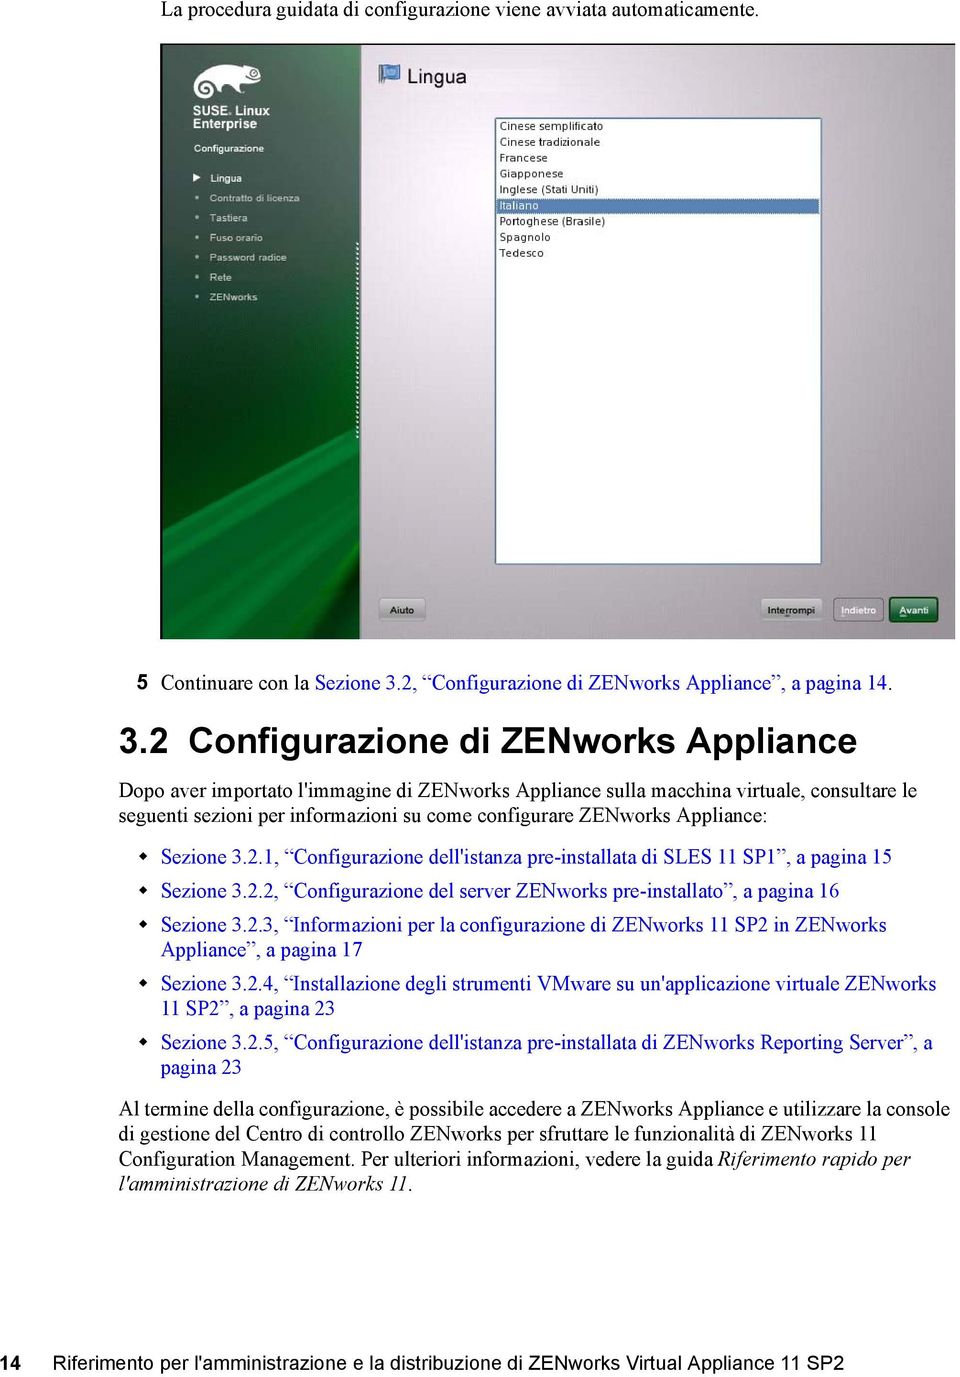 2 Configurazione di ZENworks Appliance Dopo aver importato l'immagine di ZENworks Appliance sulla macchina virtuale, consultare le seguenti sezioni per informazioni su come configurare ZENworks